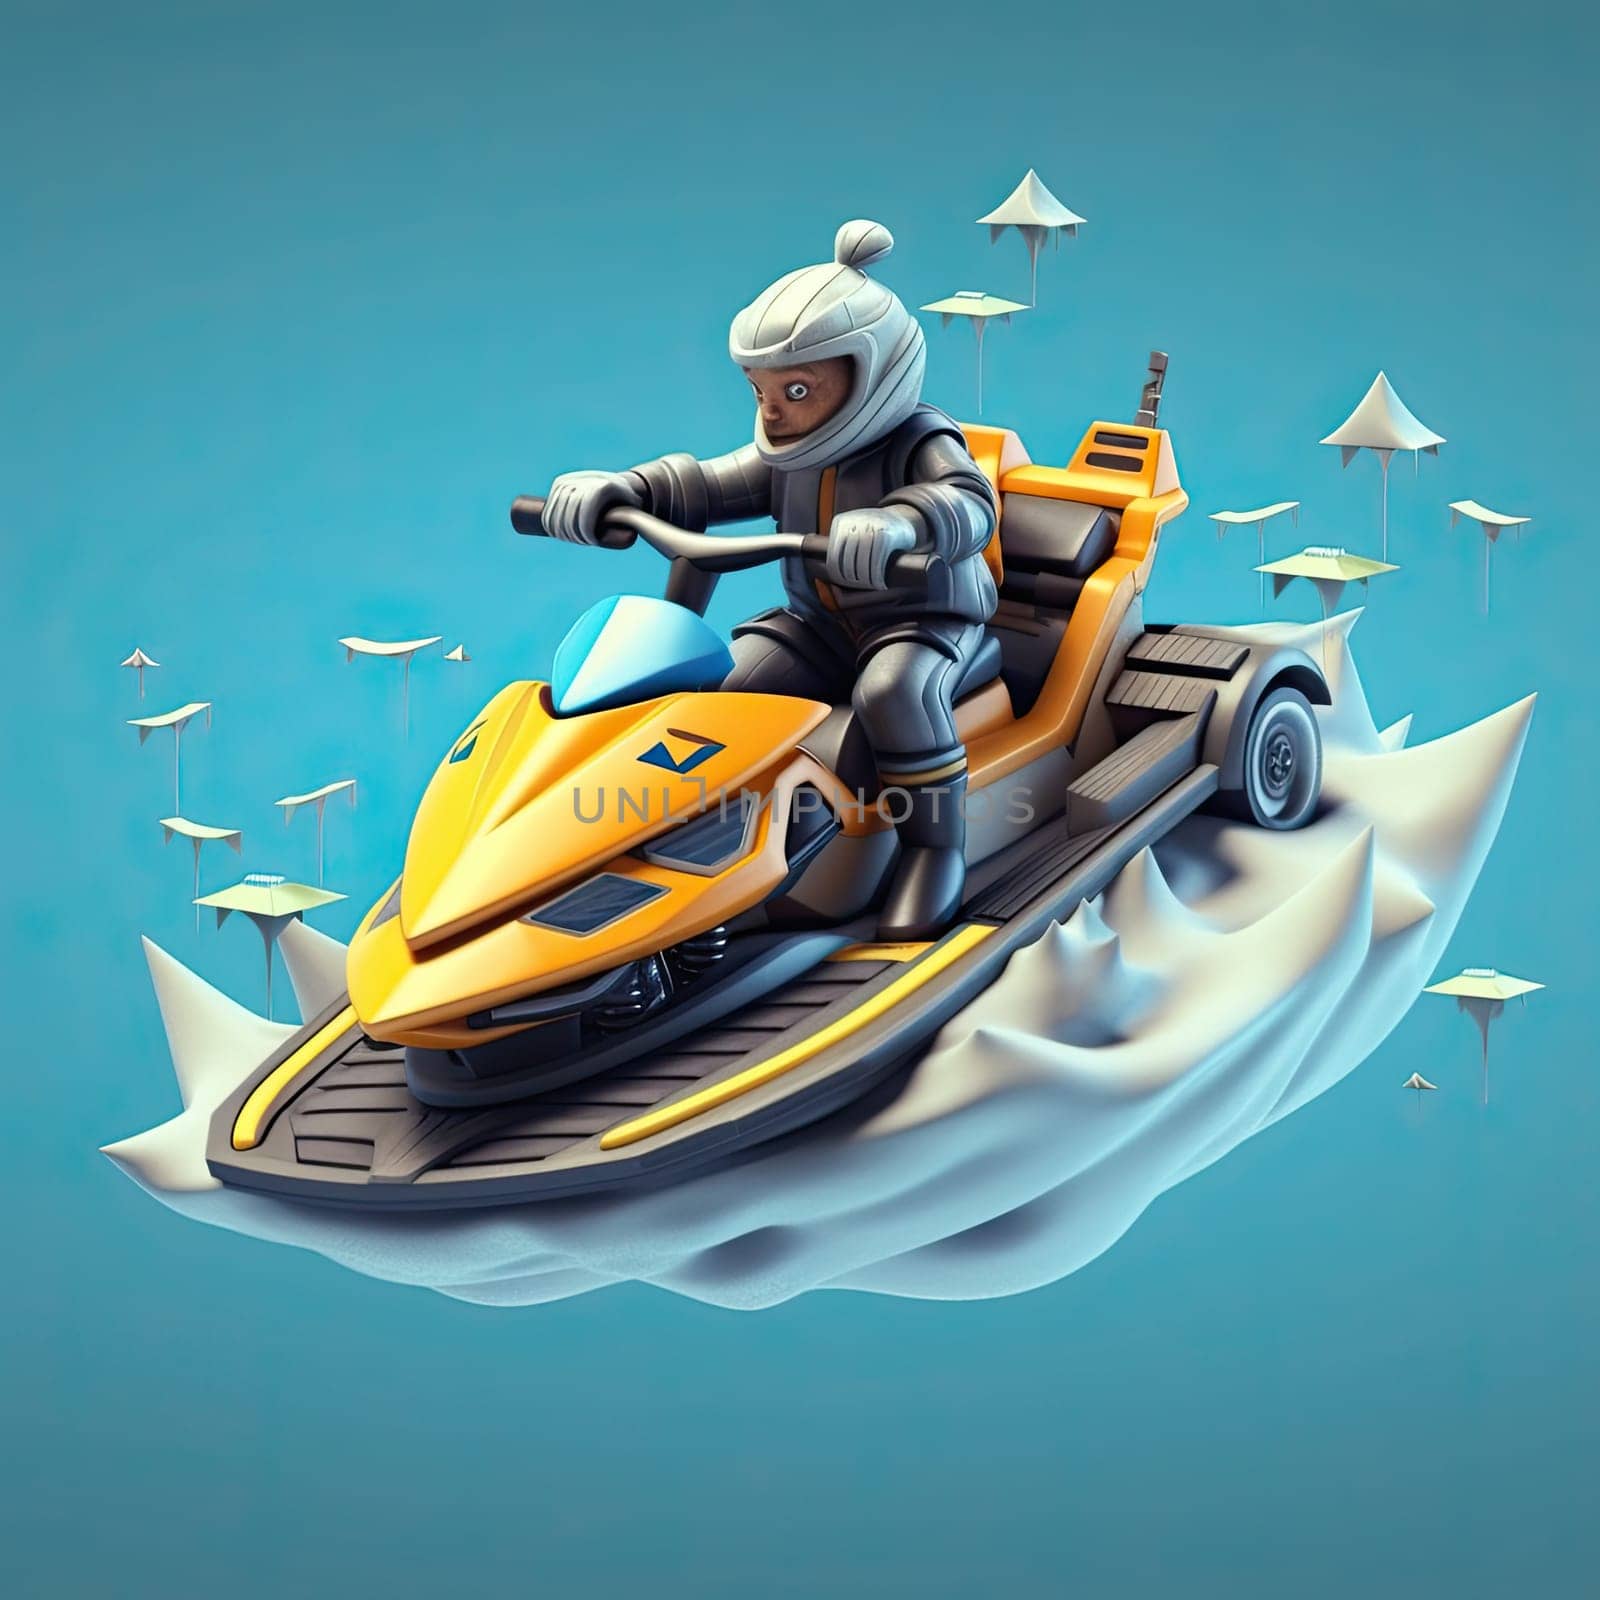 Jet ski 3d cartoon illustration - Generative AI. Jet, ski, transport, man, water.